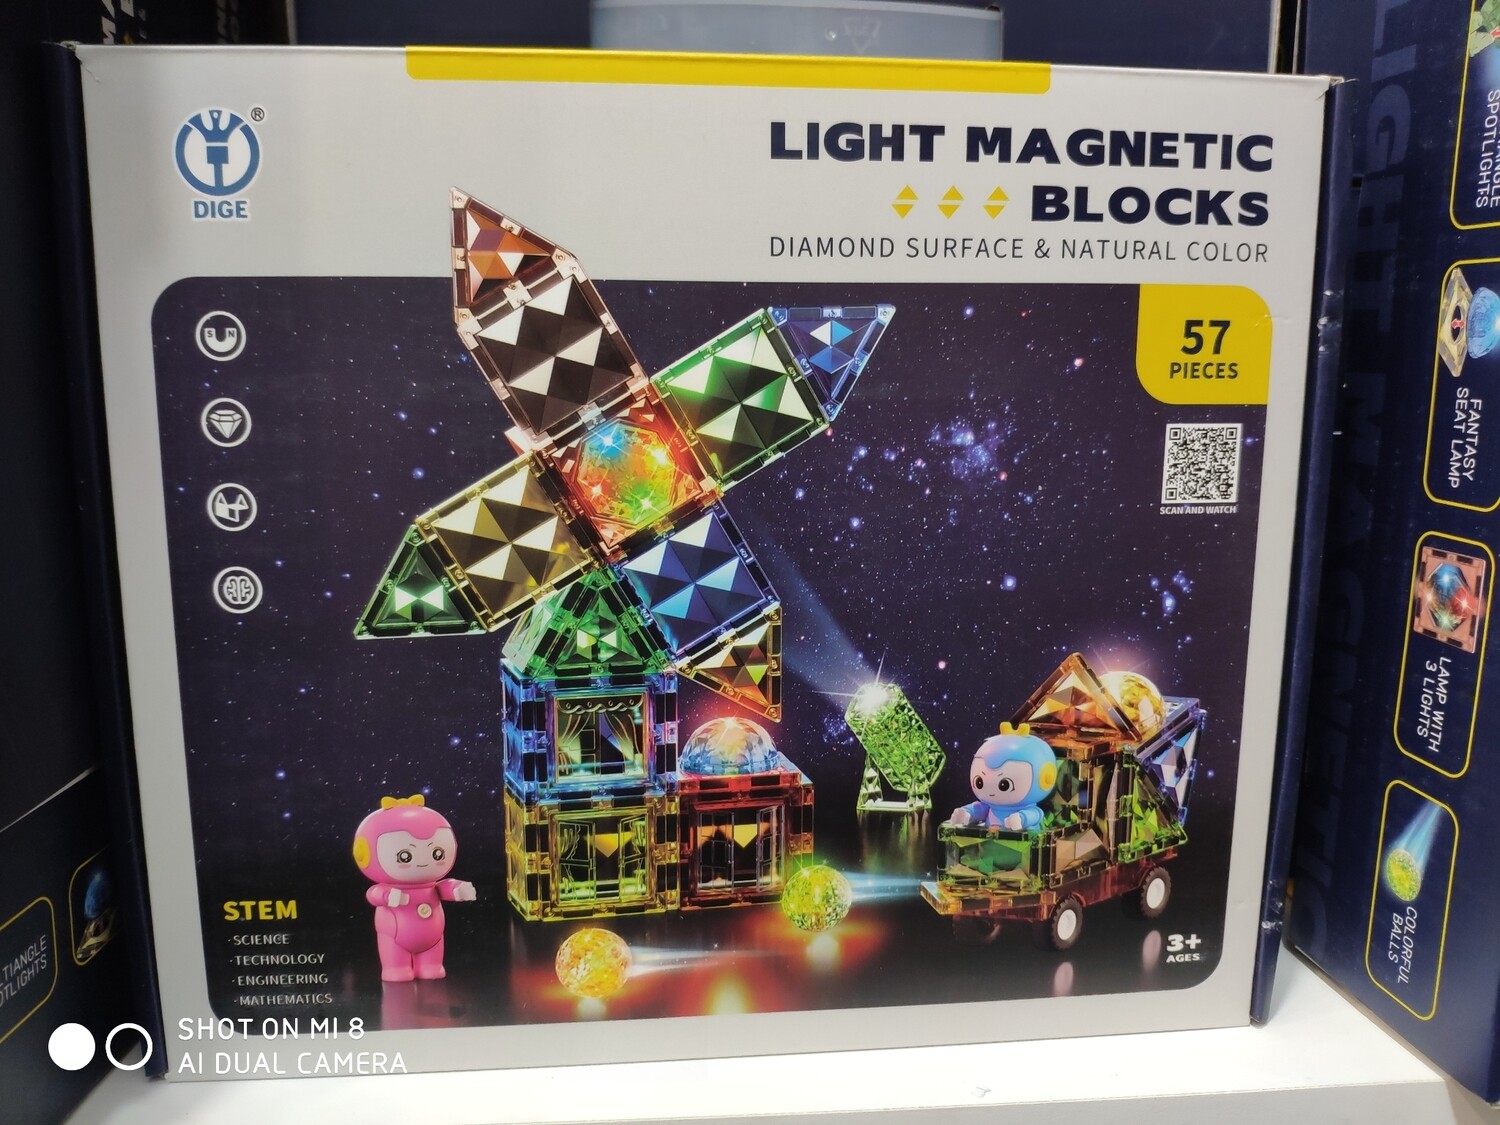 Light magnetic blocks